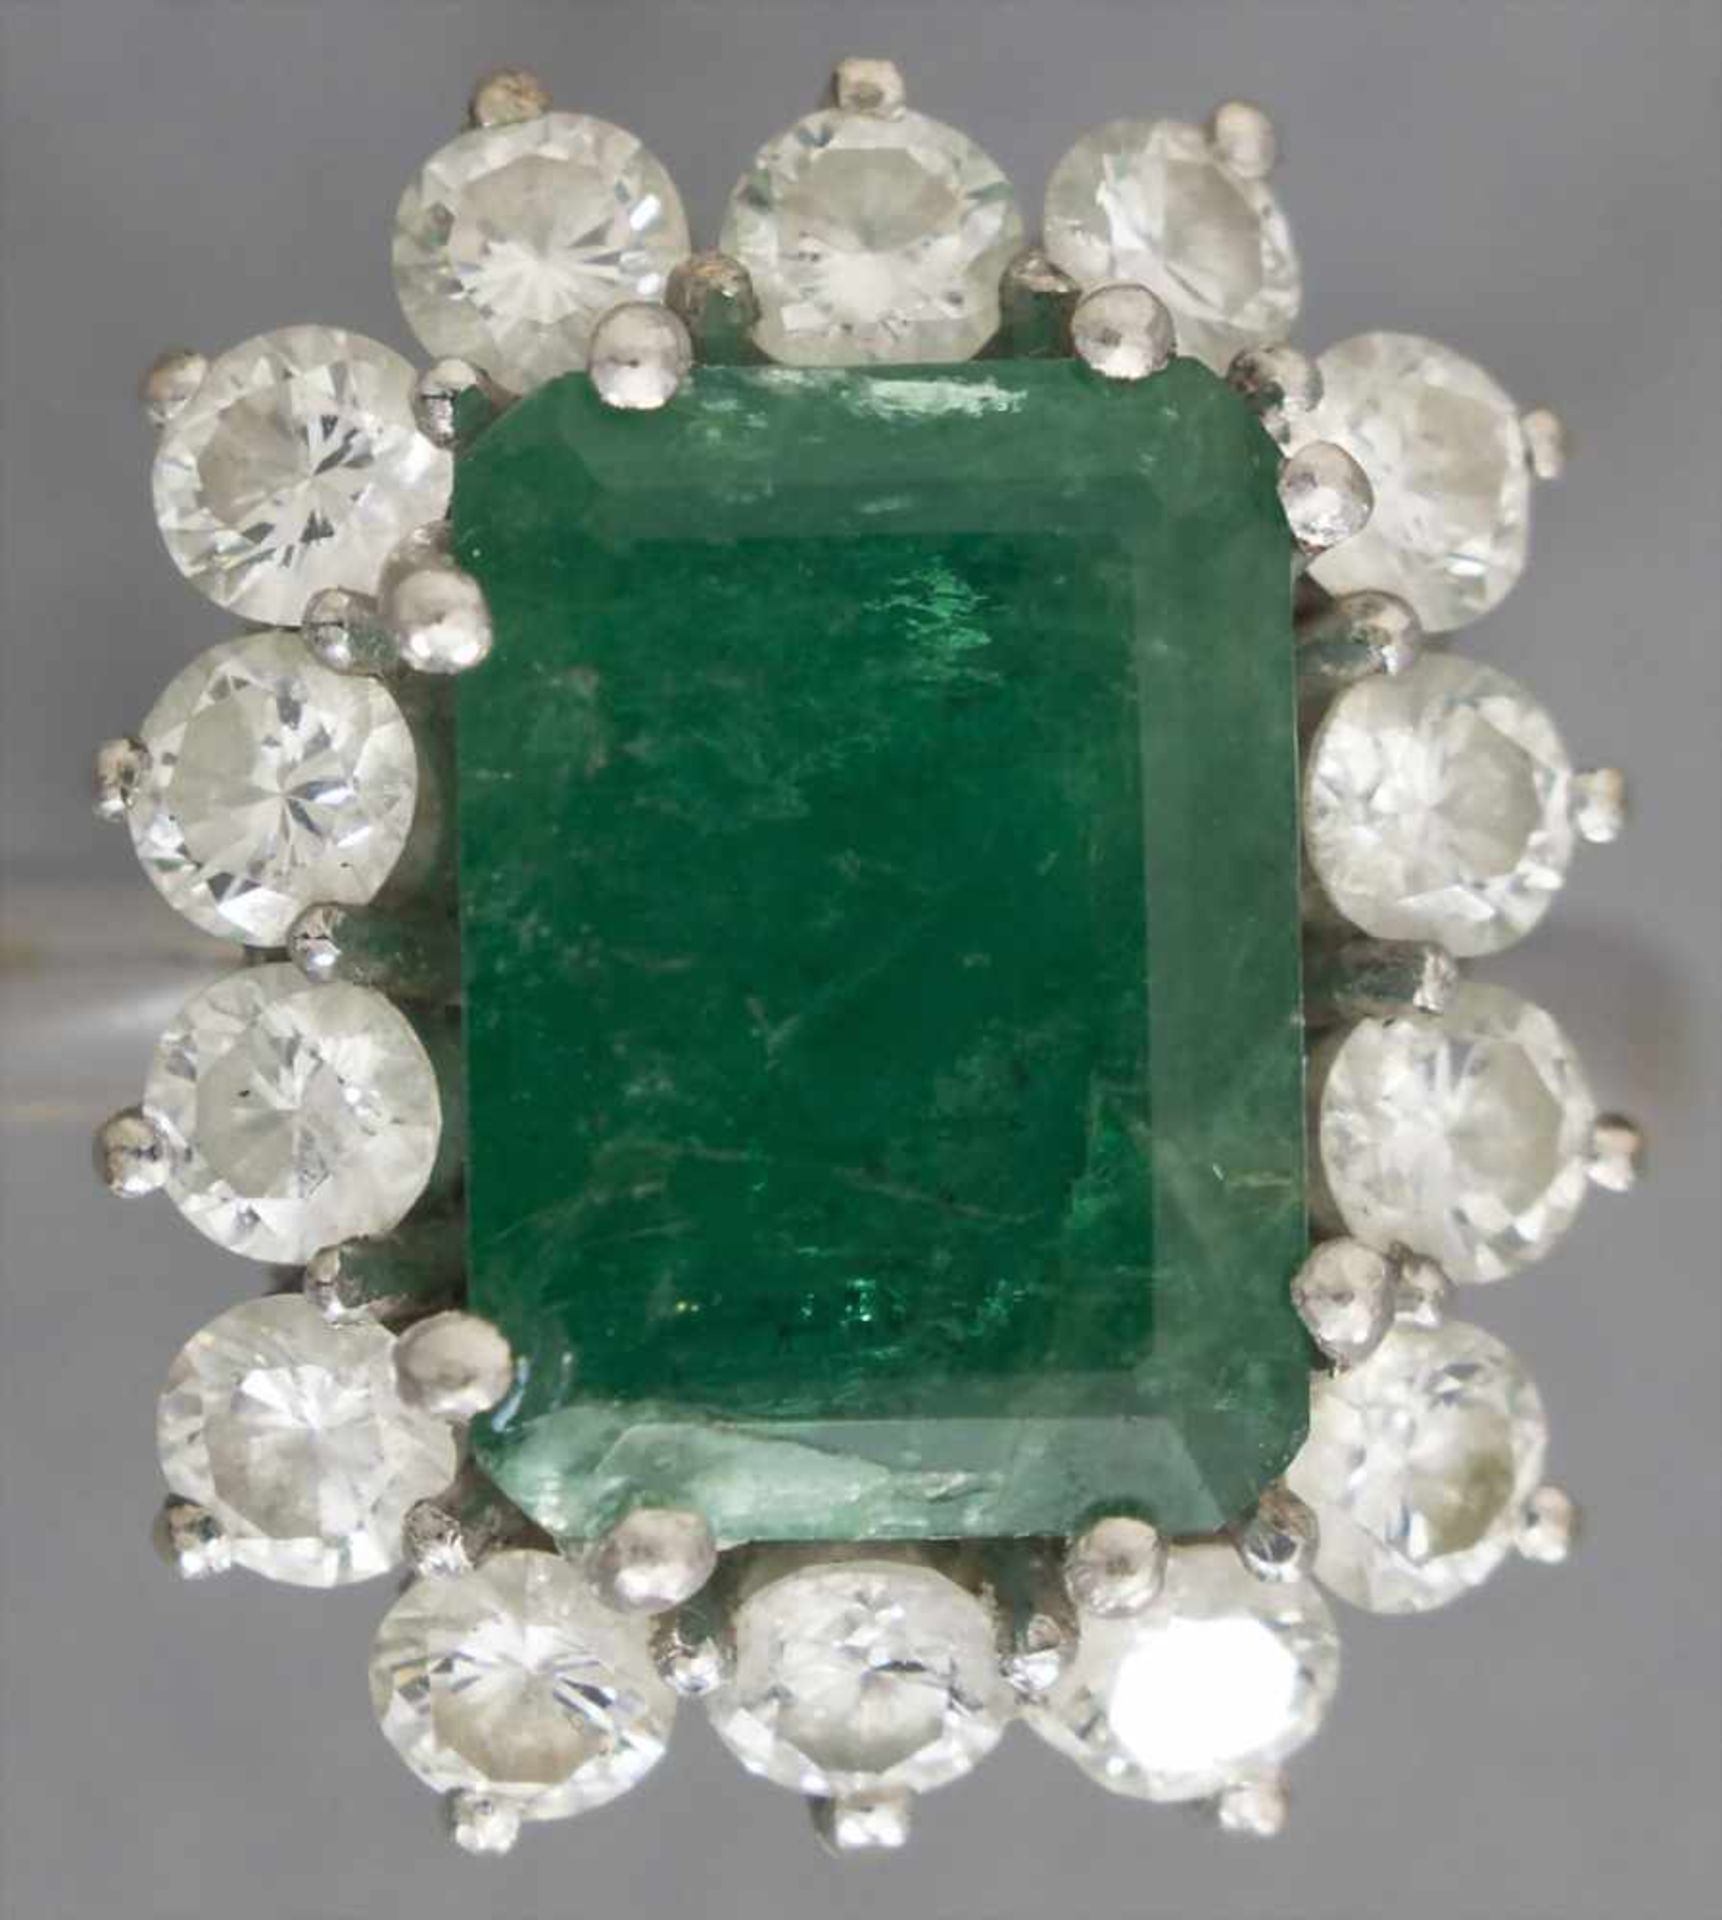 Damenring mit Smaragd und Diamanten / A ladies ring with emerald and diamondsMaterial: Weißgold